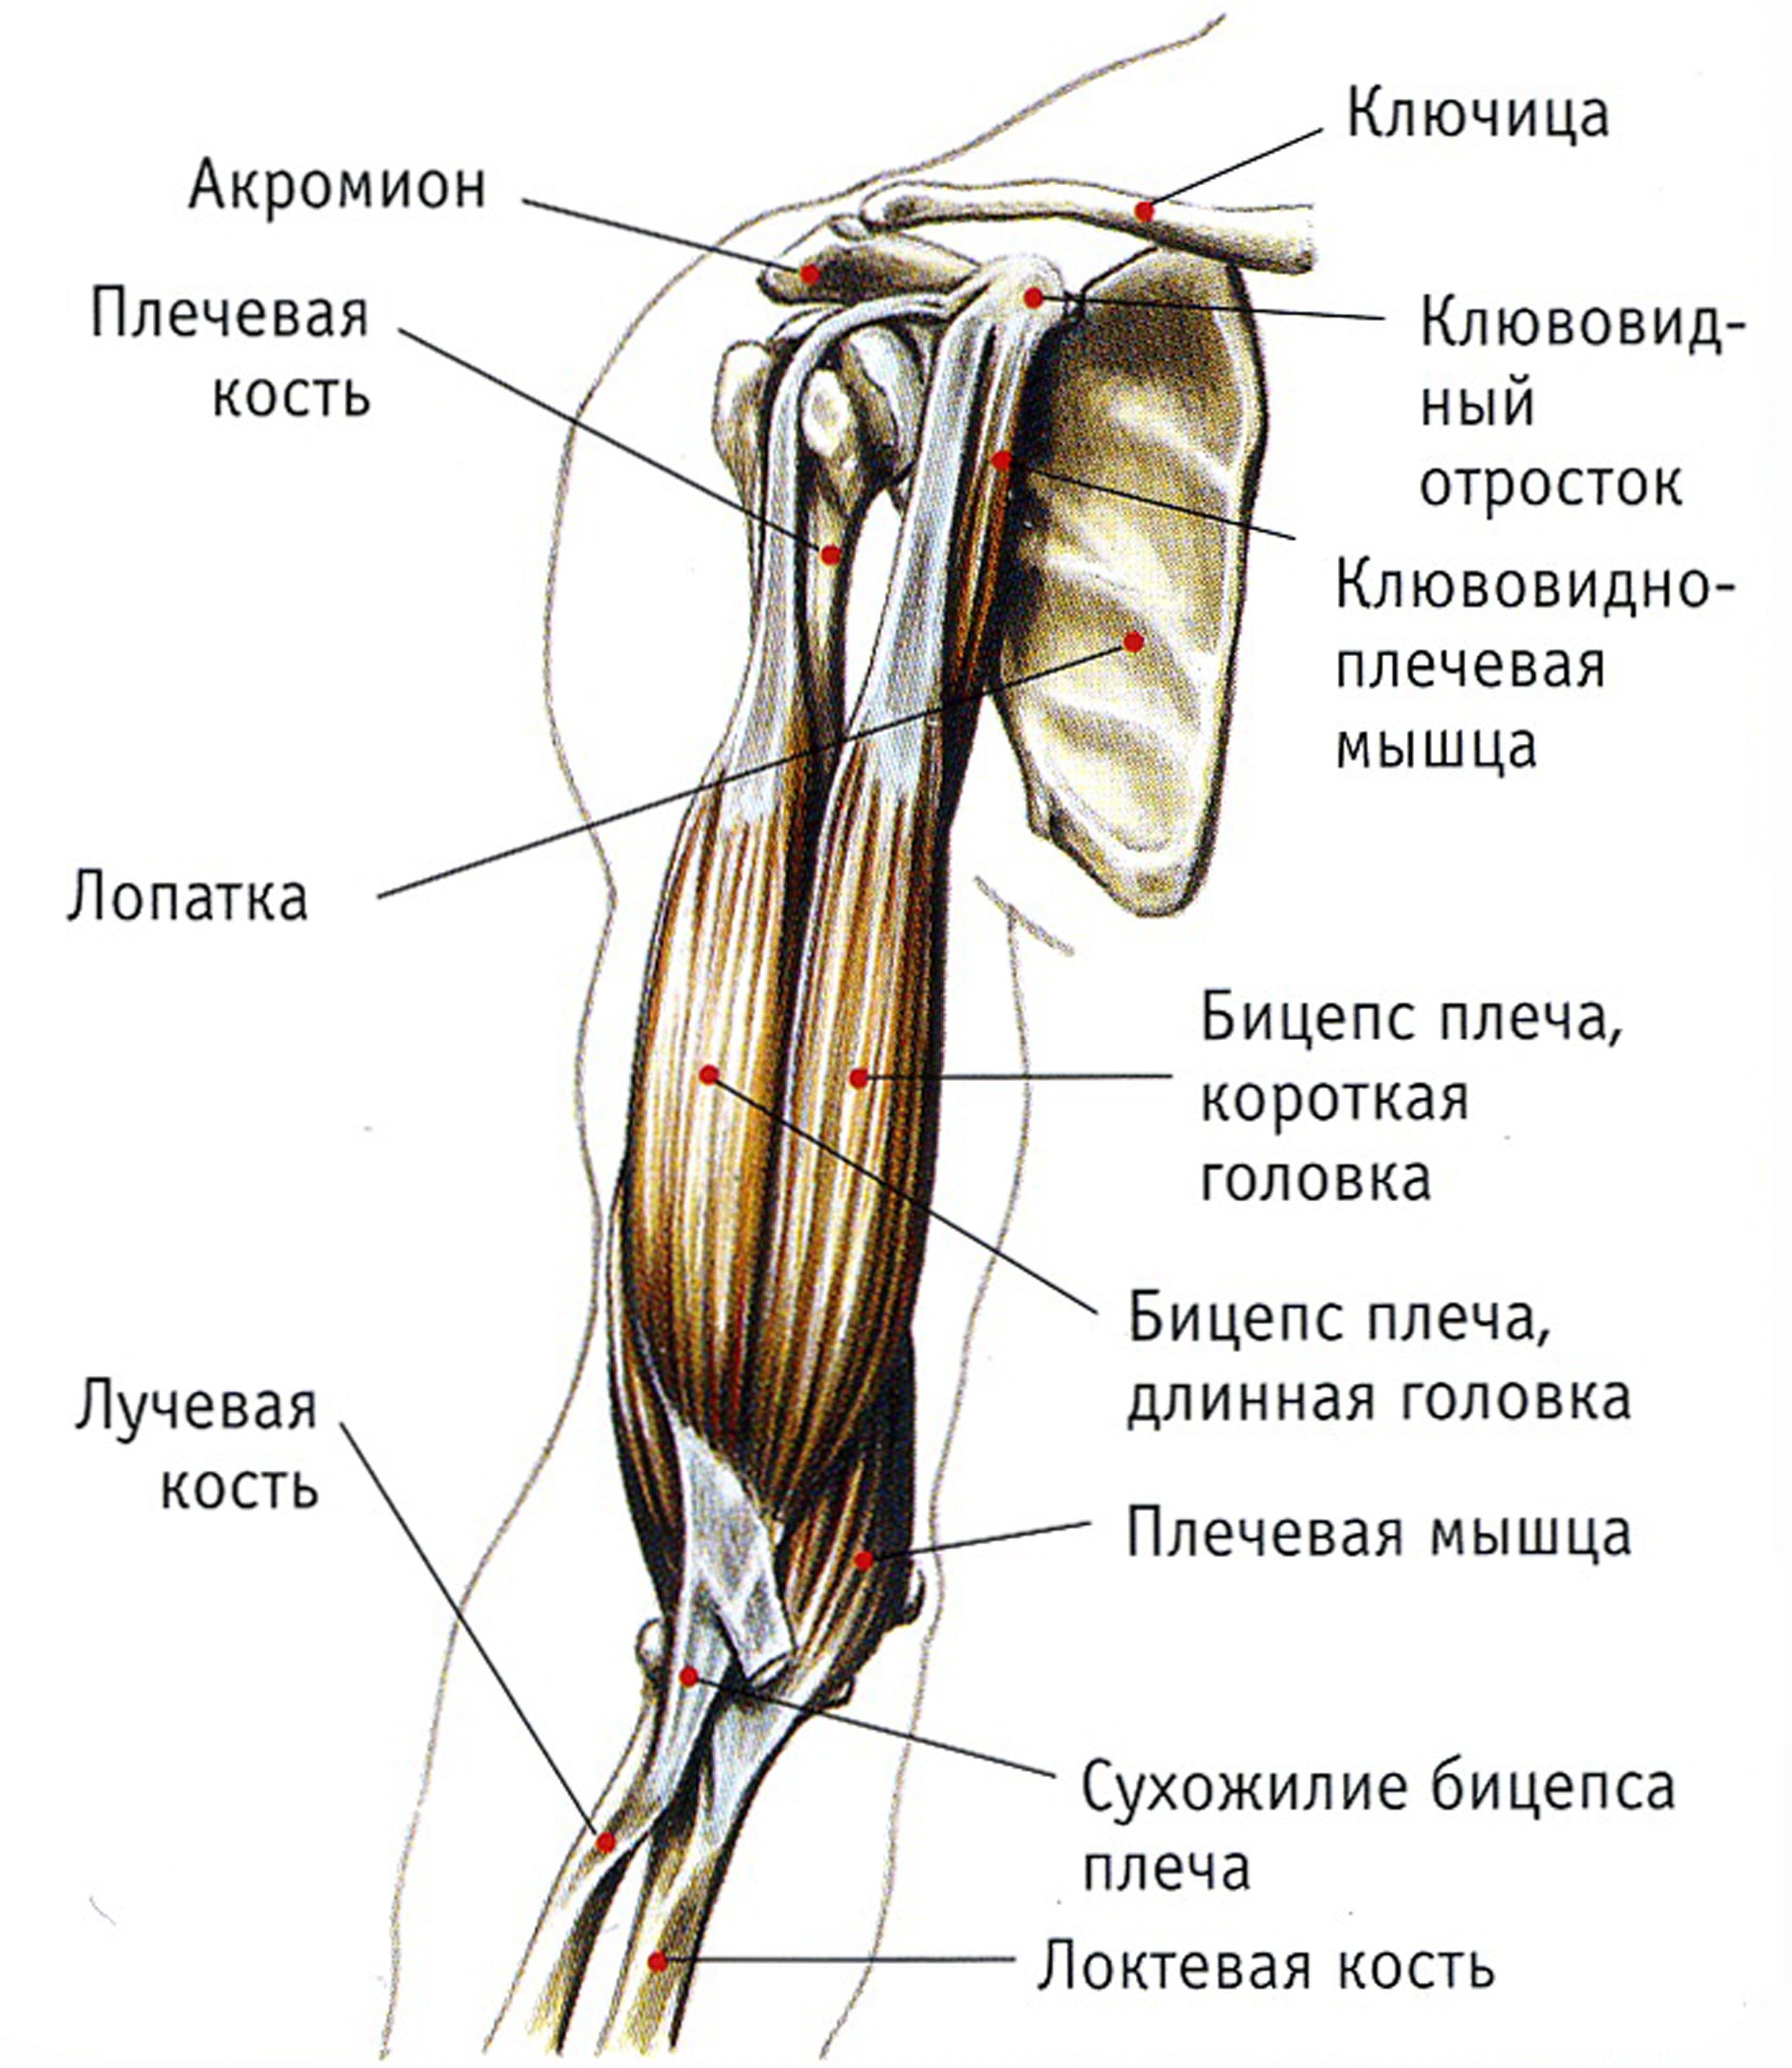 Как понять крепление бицепса. Клювовидно плечевая мышца плеча. Двуглавая мышца плеча анатомия. Крепление бицепса к плечу. Мышцы верхней конечности двуглавая.